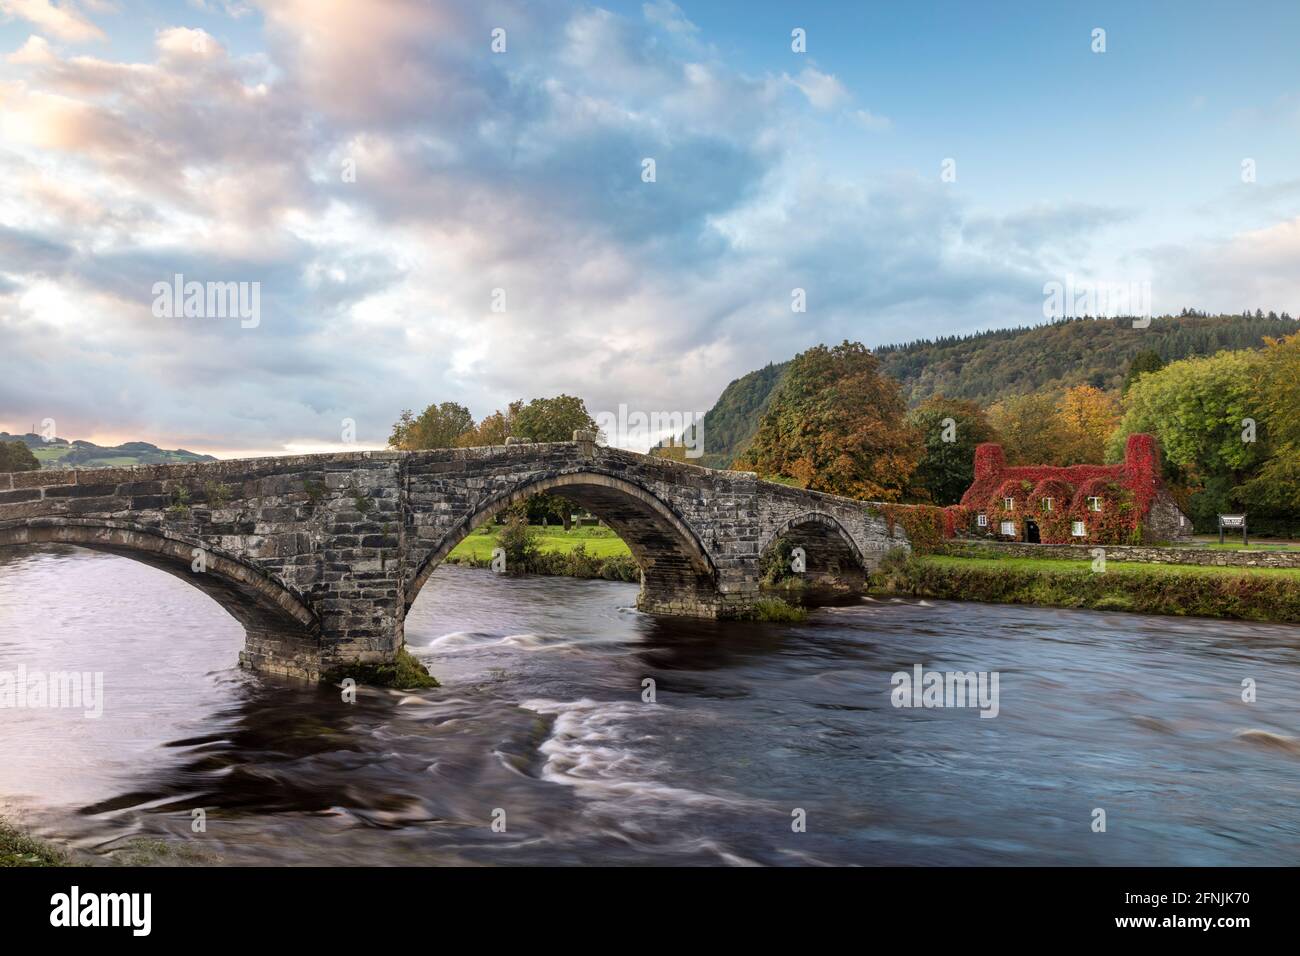 Der erste Morgengrauen über der Inigo Jones Bridge, dem Conwy River und dem TU Hwnt i’r Bont Tea Room, Llanwrst, Wales, Großbritannien Stockfoto